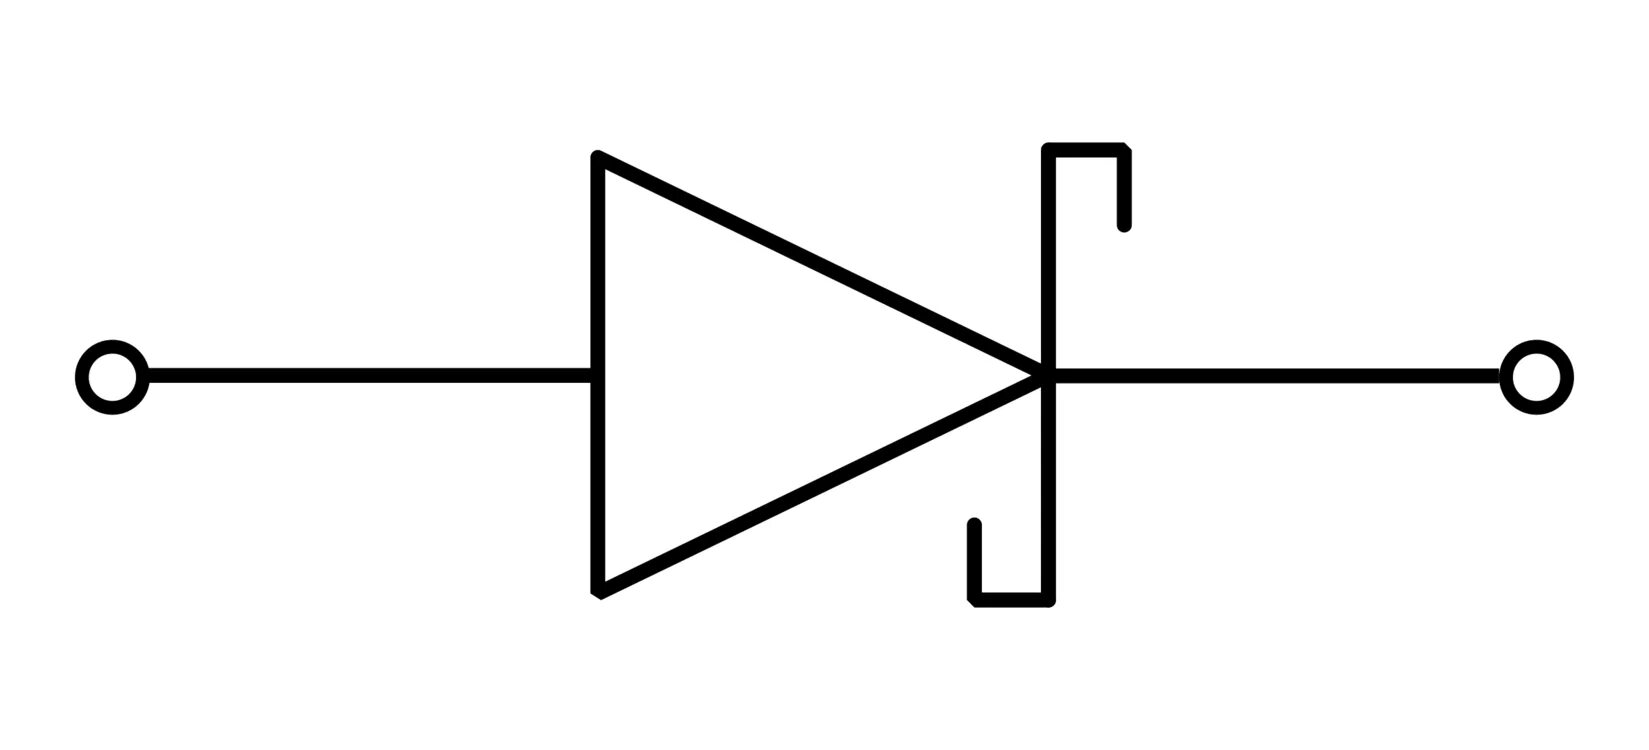 Диод лет. Изображение диода на схеме. Диод пиктограмма. Стабилитрон символ. Изображение светодиода на схеме.